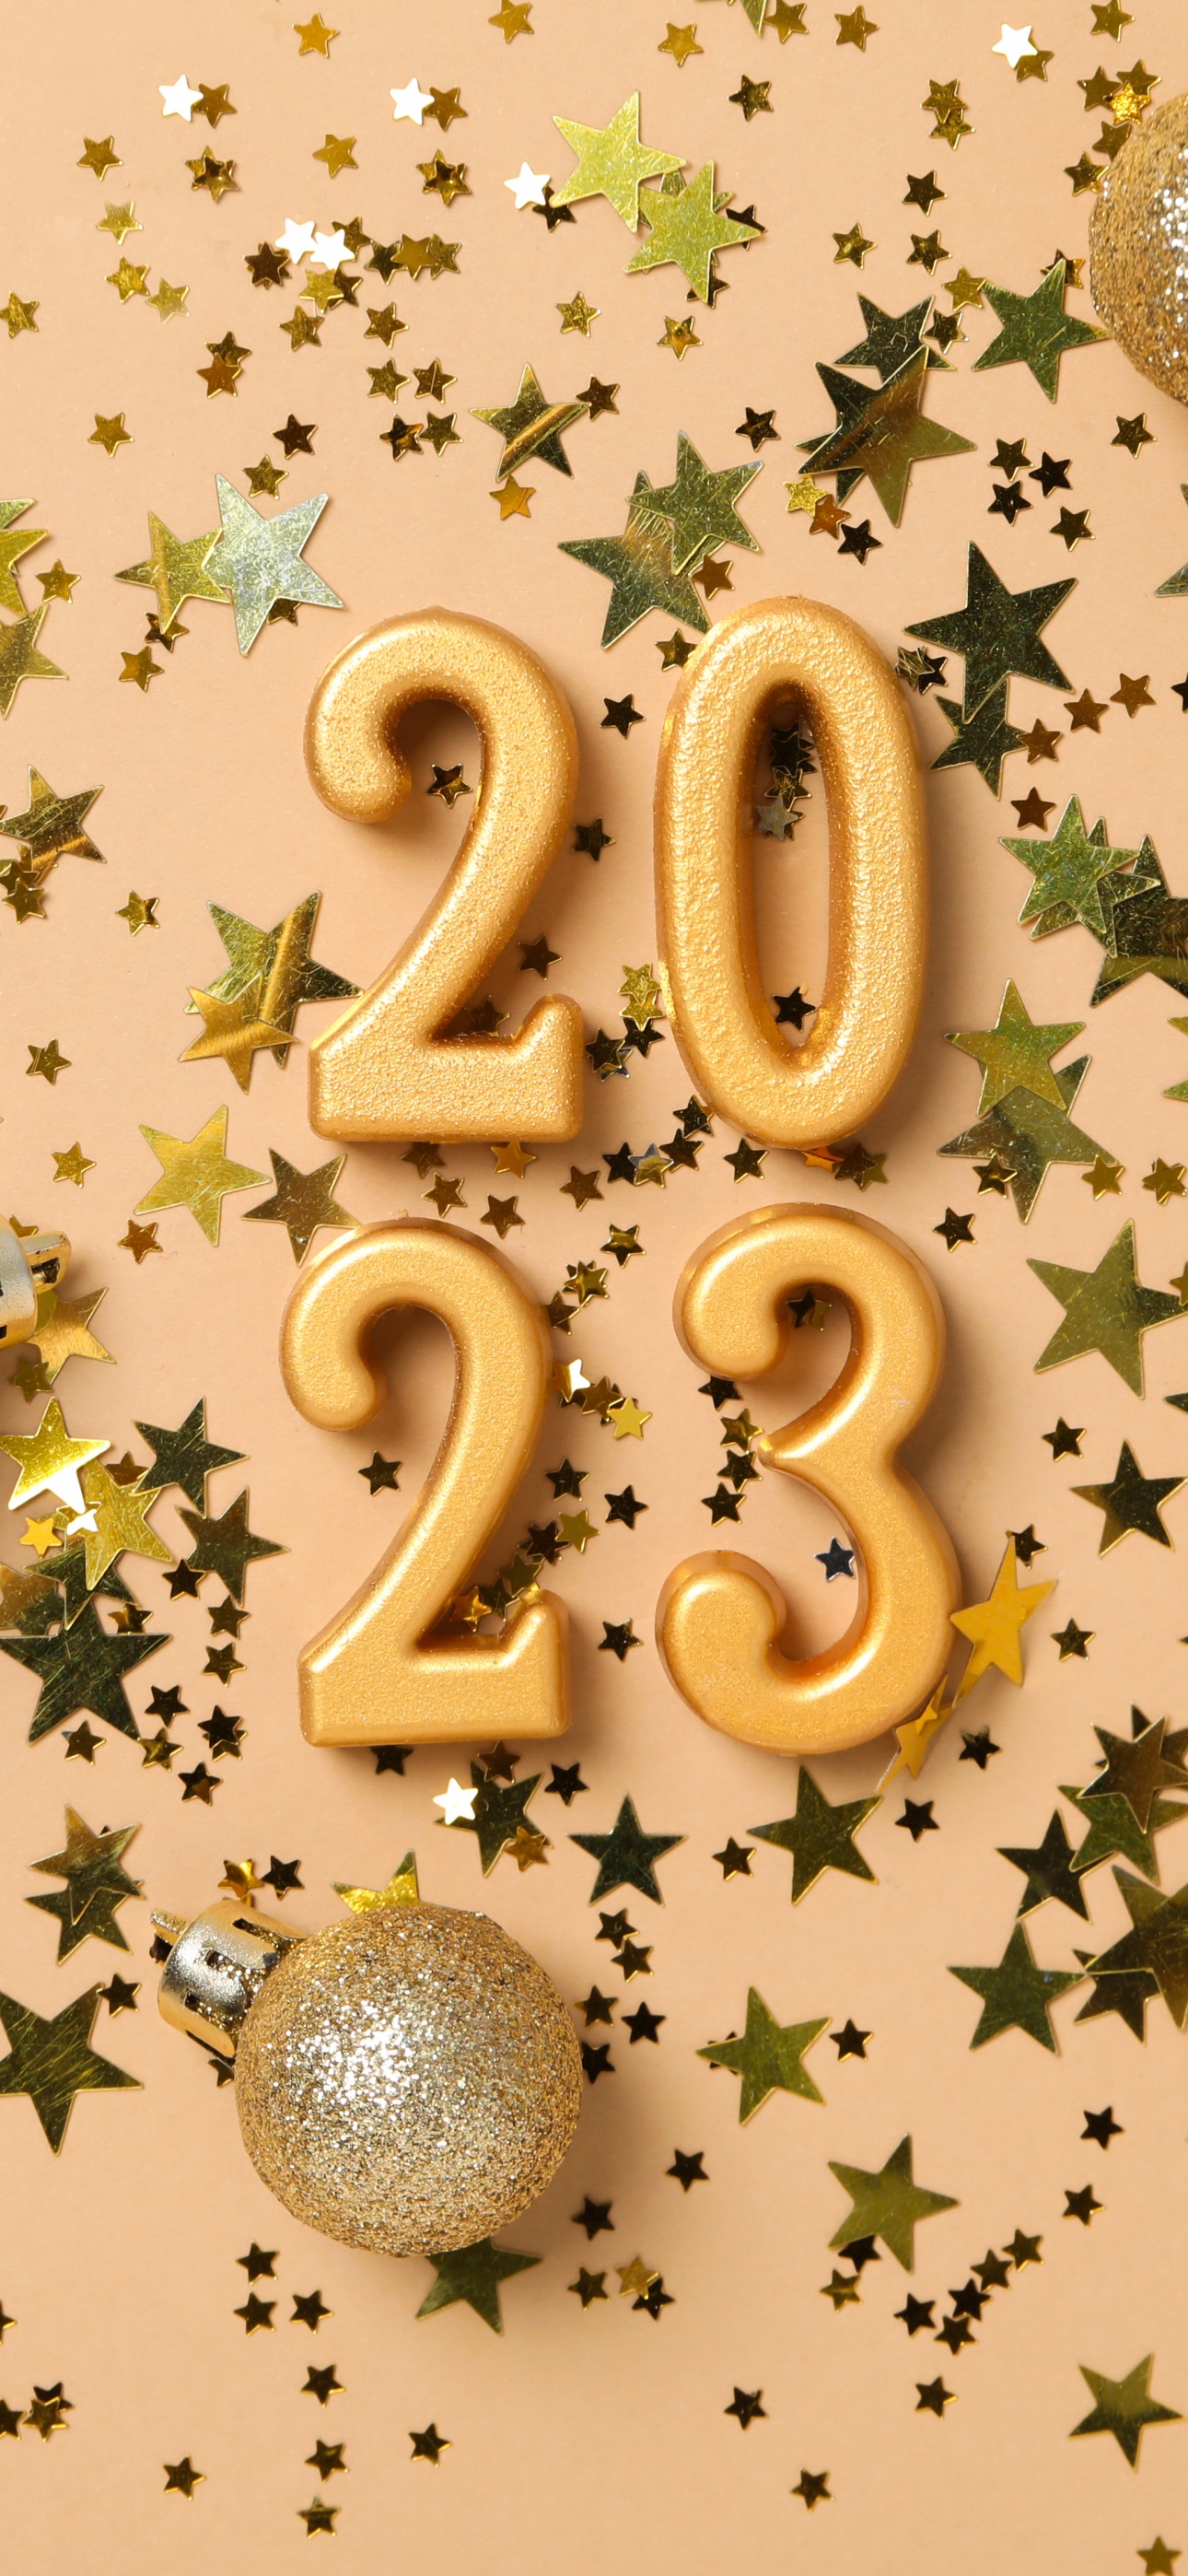 Hình nền năm mới 2024 là điều mà bạn không nên bỏ qua! Những hình ảnh đầy sáng tạo và đầy ý nghĩa sẽ giúp bạn đón chào năm mới với tâm trạng hưng phấn và đầy động lực. Hãy thưởng thức những hình nền độc đáo này và sẵn sàng để nhận được những điều tuyệt vời nhất trong năm mới 2024!